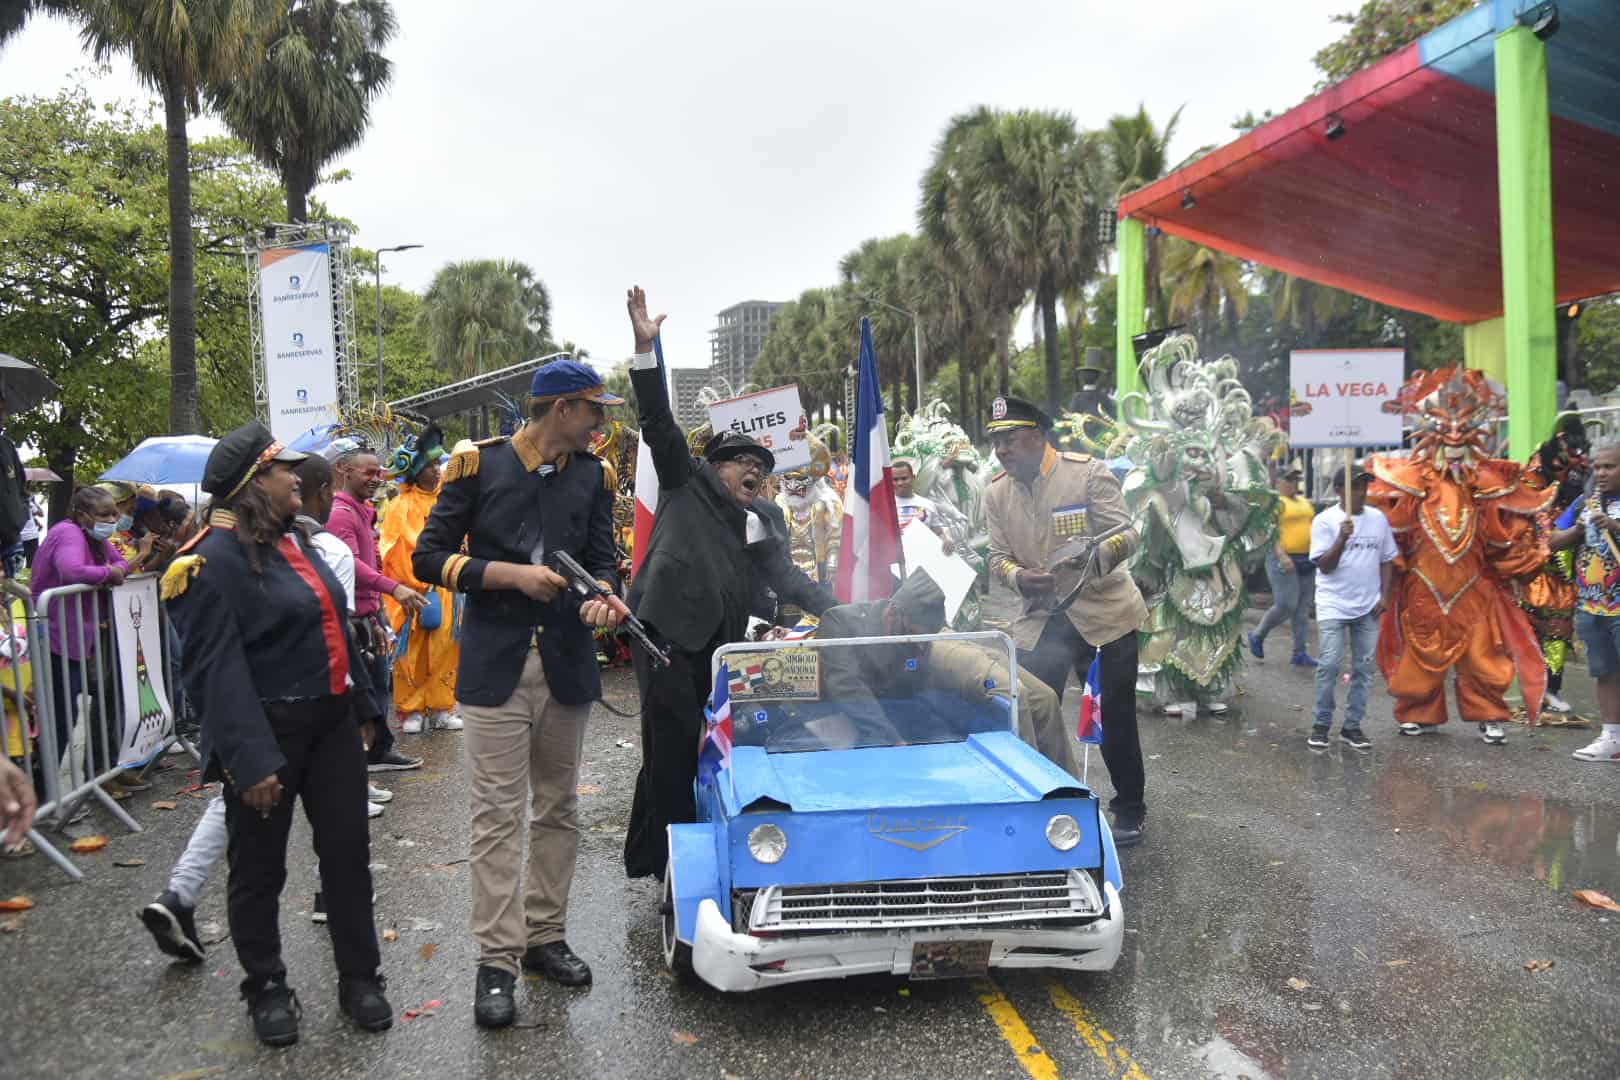 Los eventos políticos de la historia contemporánea dominicana también tuvieron representación en el desfile